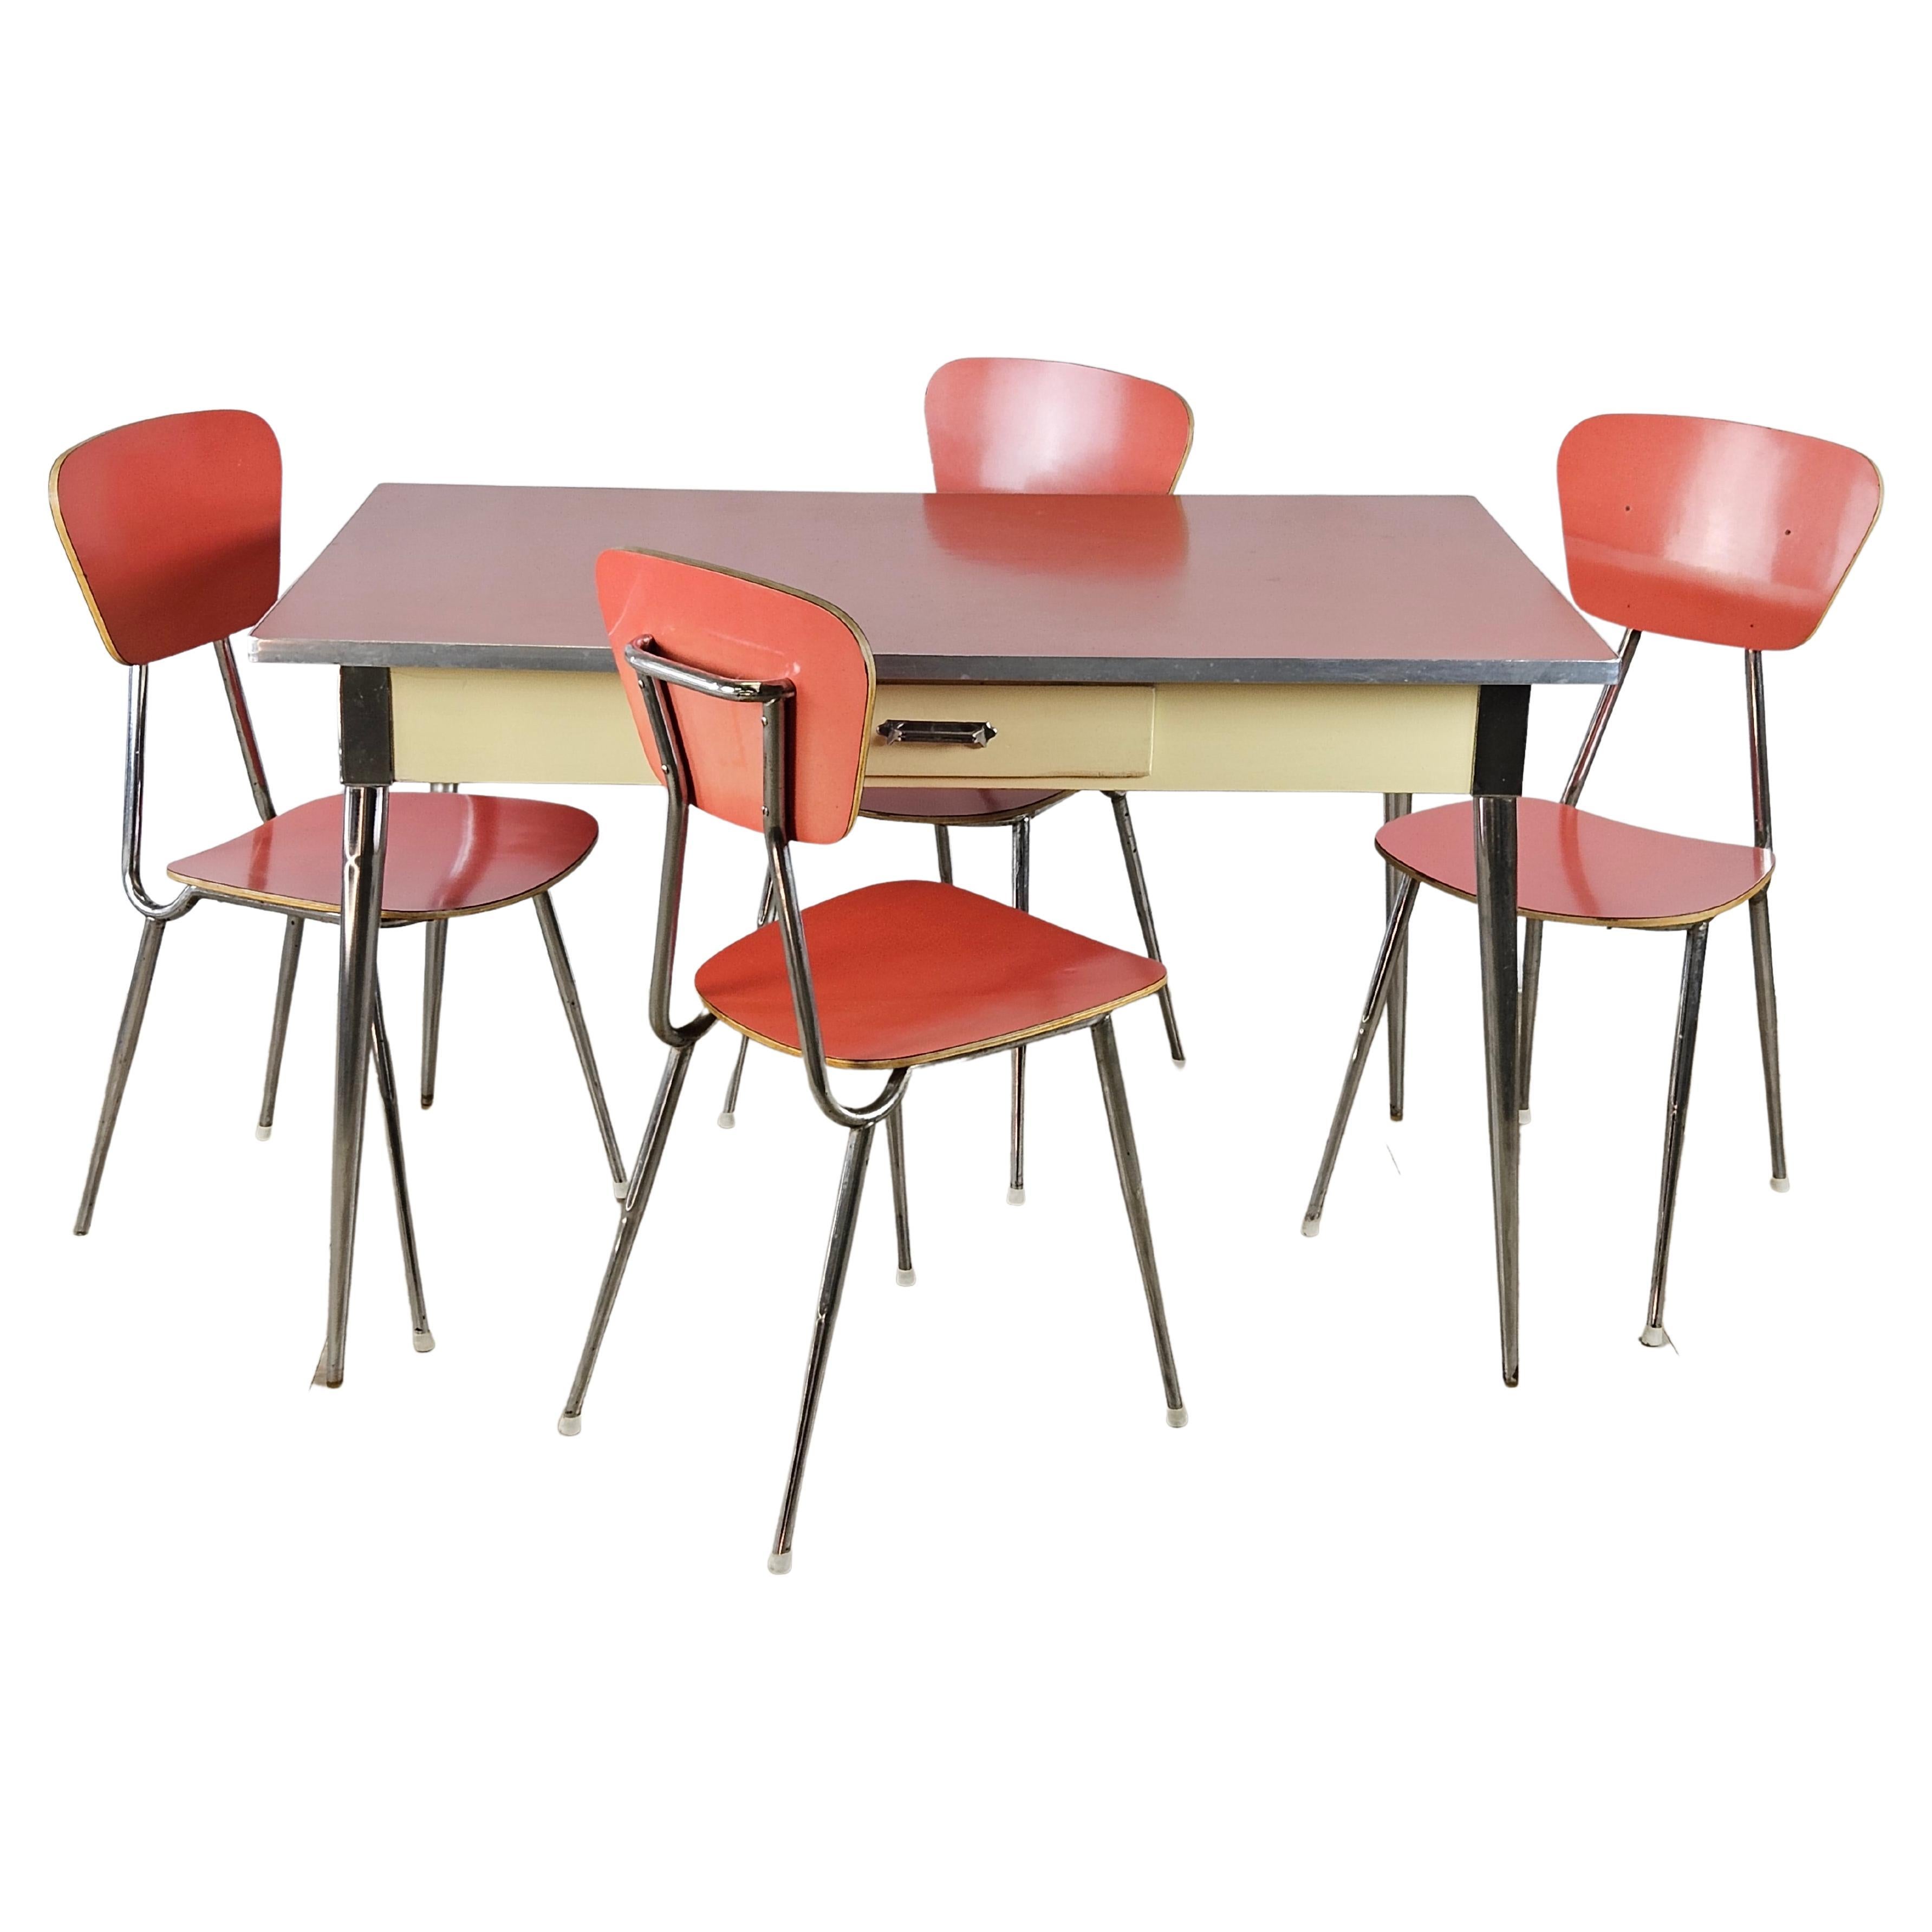 Esszimmergarnitur mit rotem Formica-Tisch und 4 Stühlen